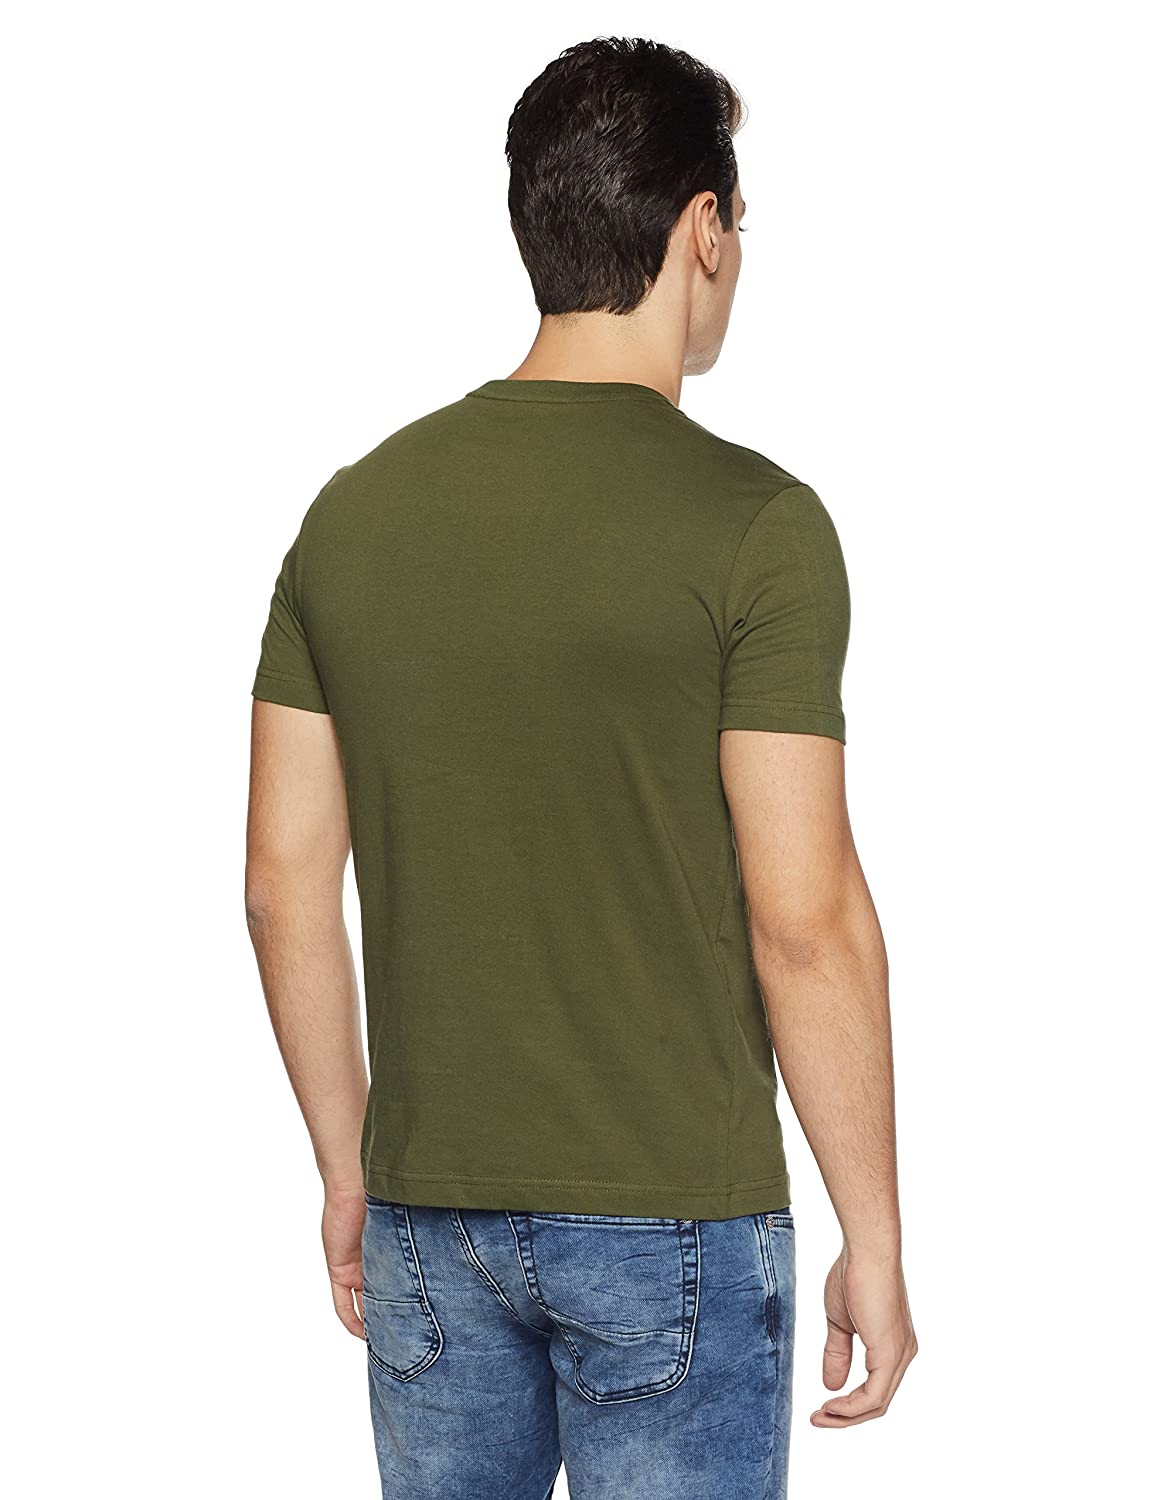 U.S. Polo Assn. Cotton Casual Green T-shirt For Men - Stilento